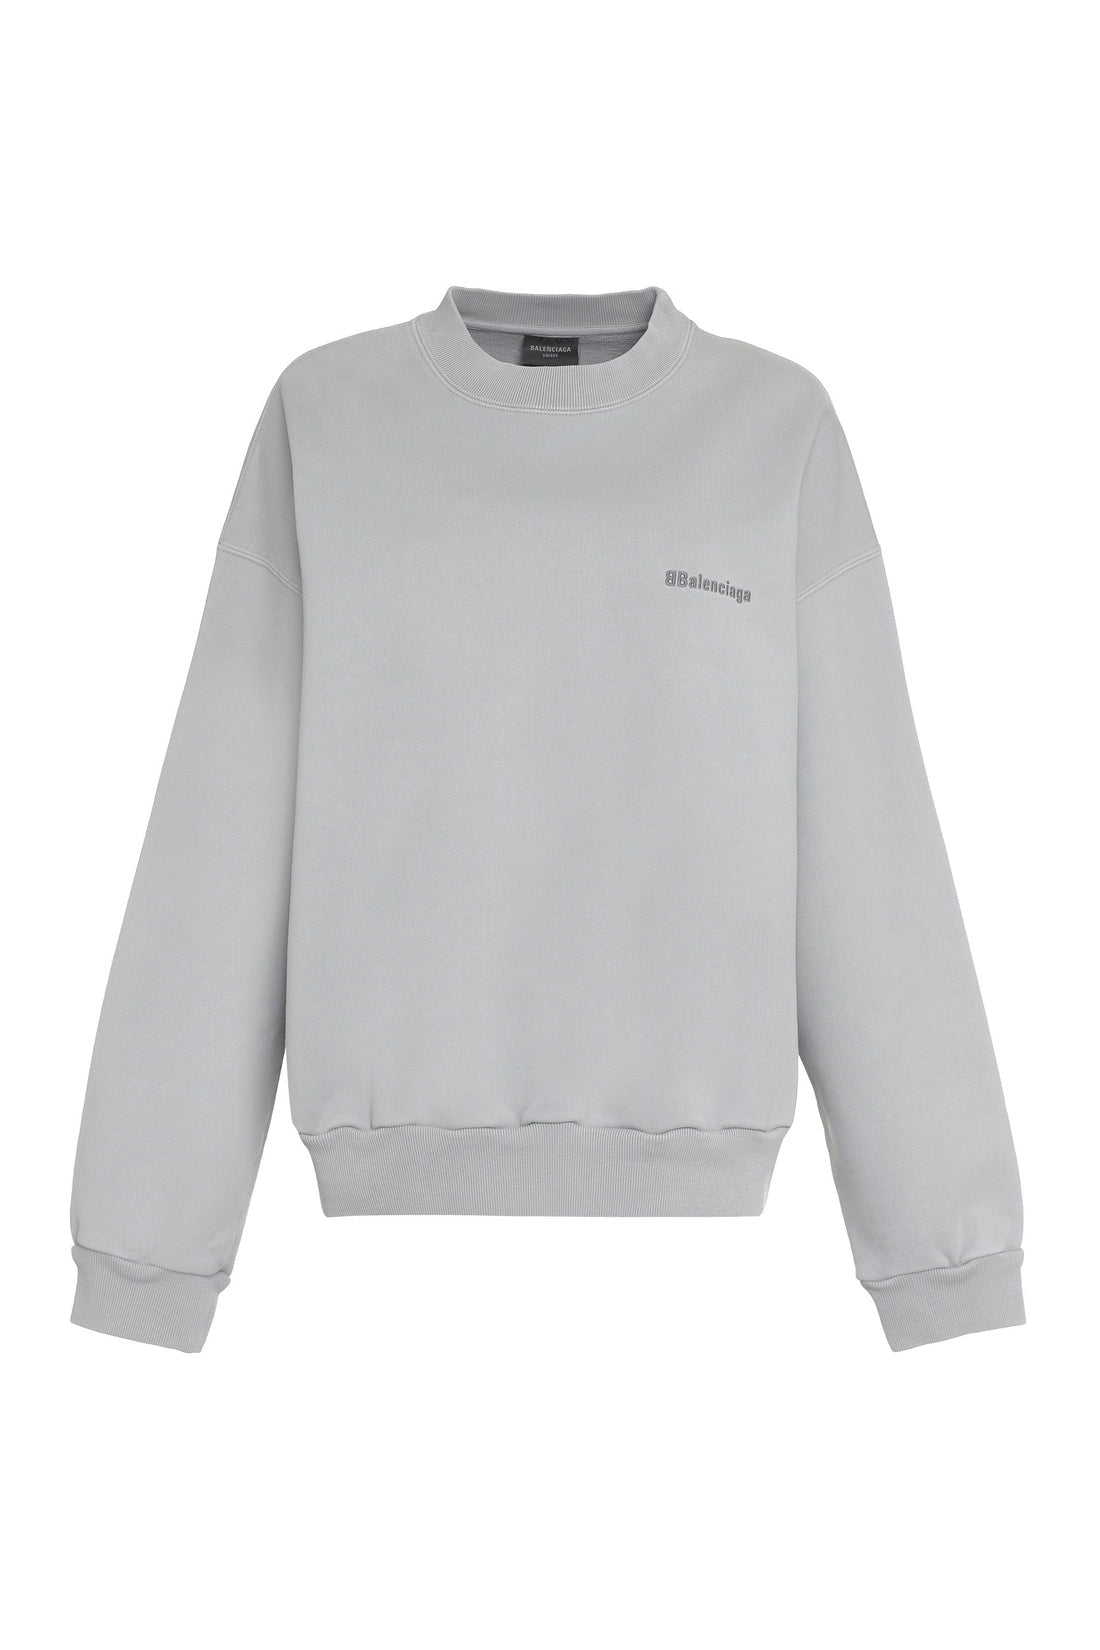 Balenciaga-OUTLET-SALE-Cotton crew-neck sweatshirt-ARCHIVIST